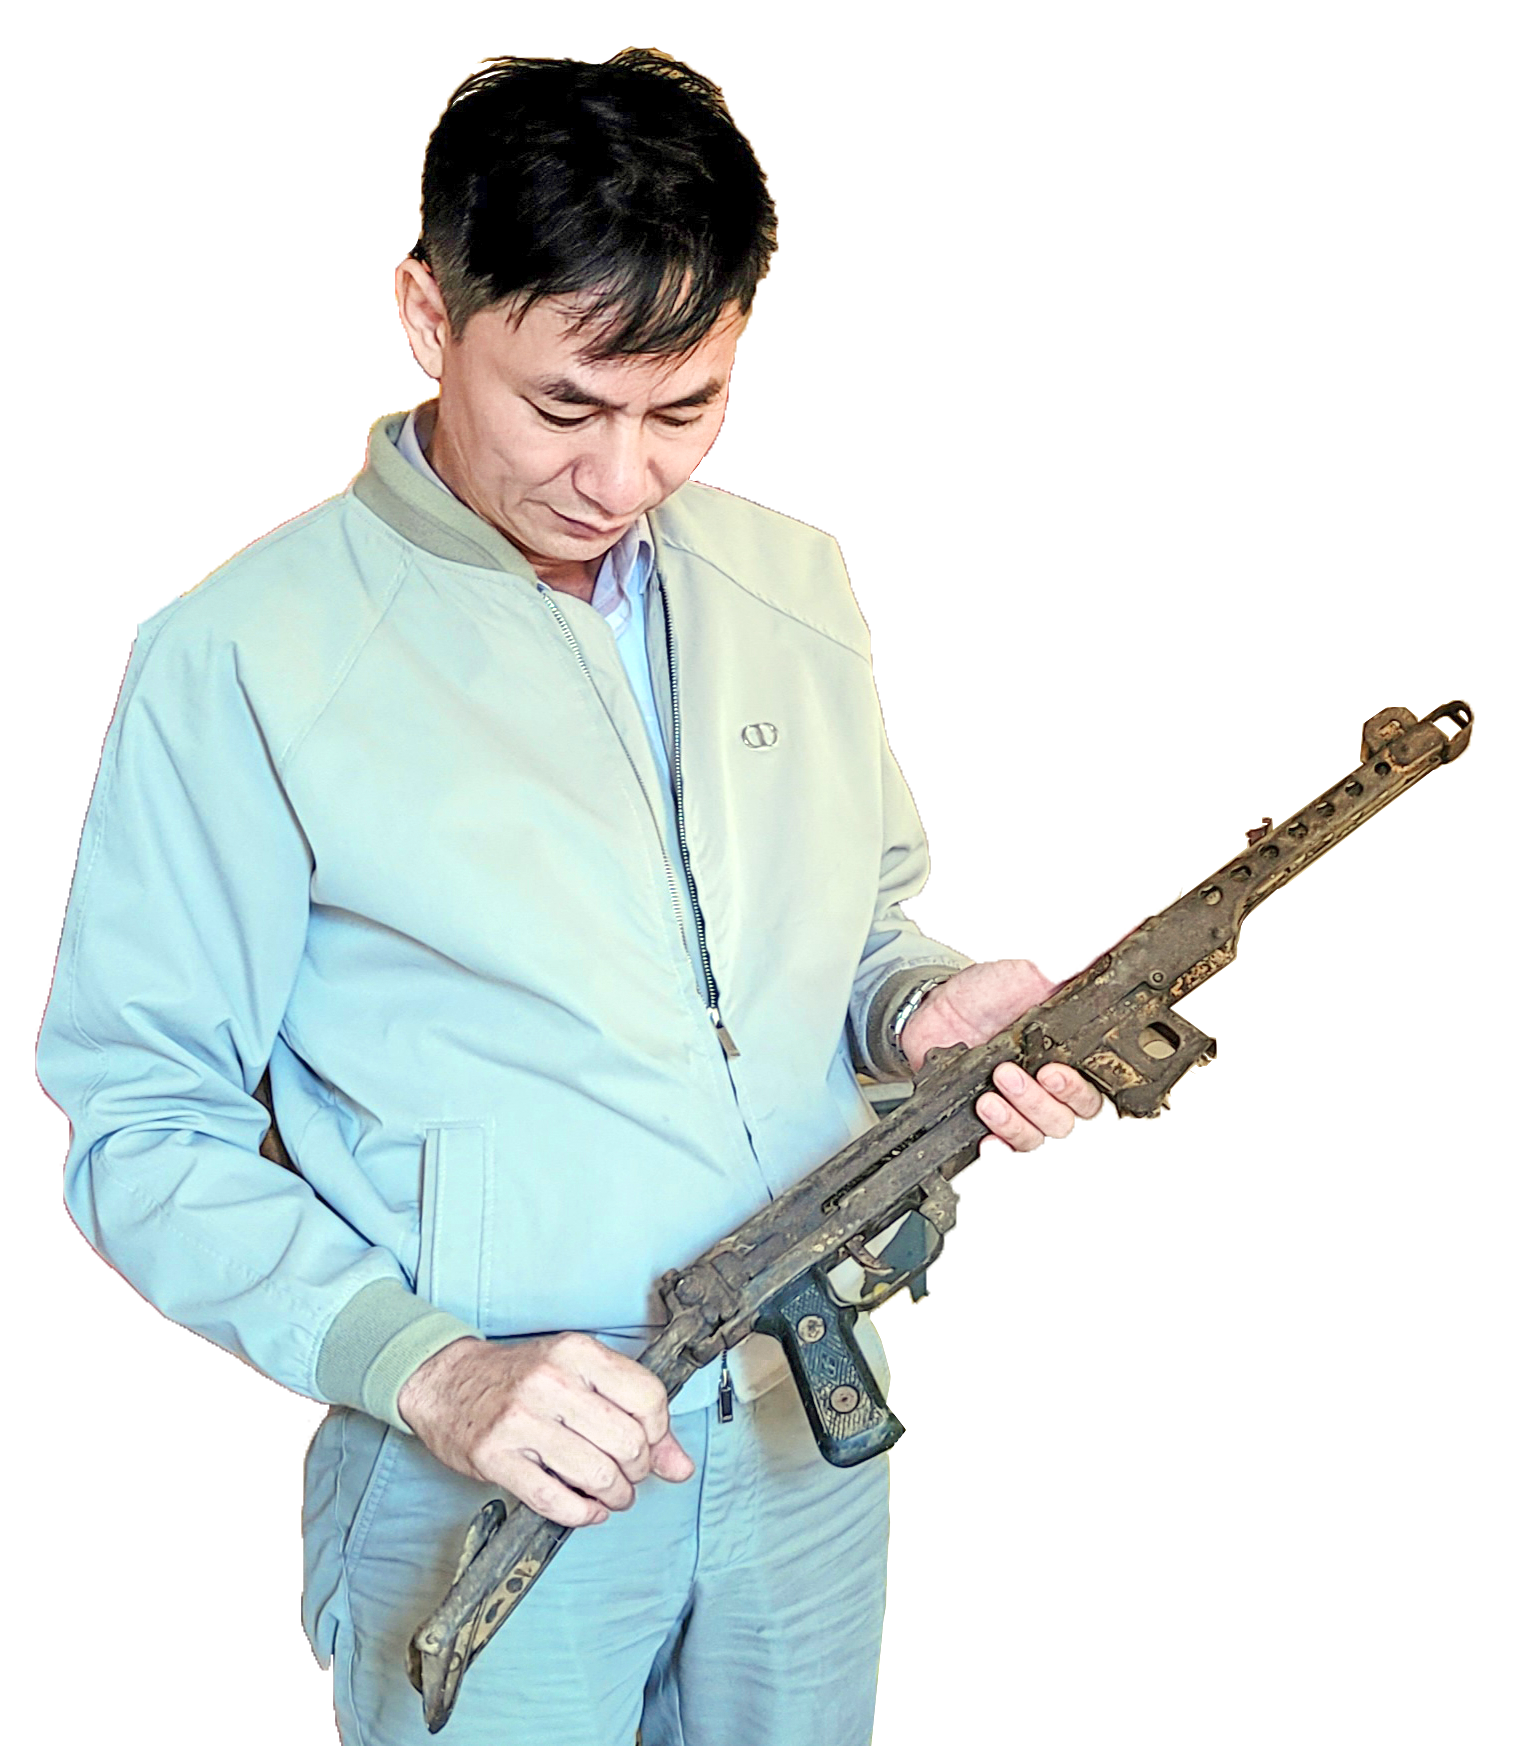 Khẩu súng được chính tay Tư lệnh Đồng Sỹ Nguyên giao cho ông Nguyễn Đức Thể sử dụng hiện đang cất giữ tại bảo tàng.